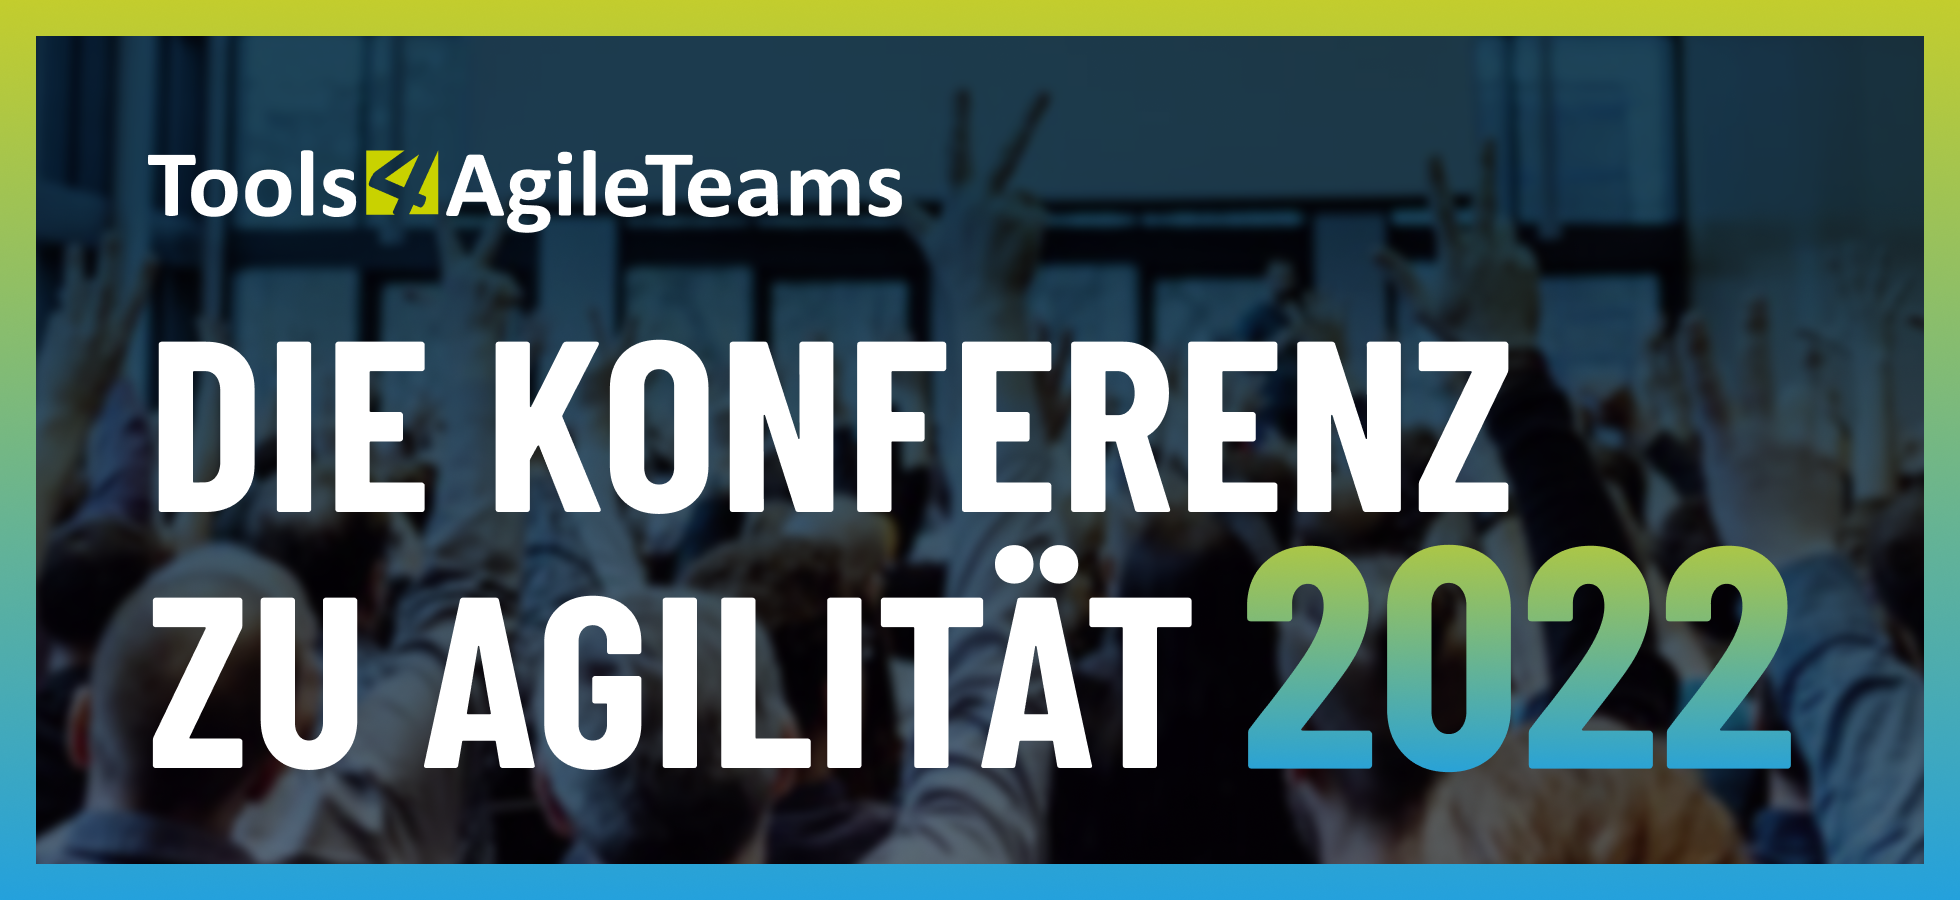 Die 11. Tools4AgileTeams startet heute!